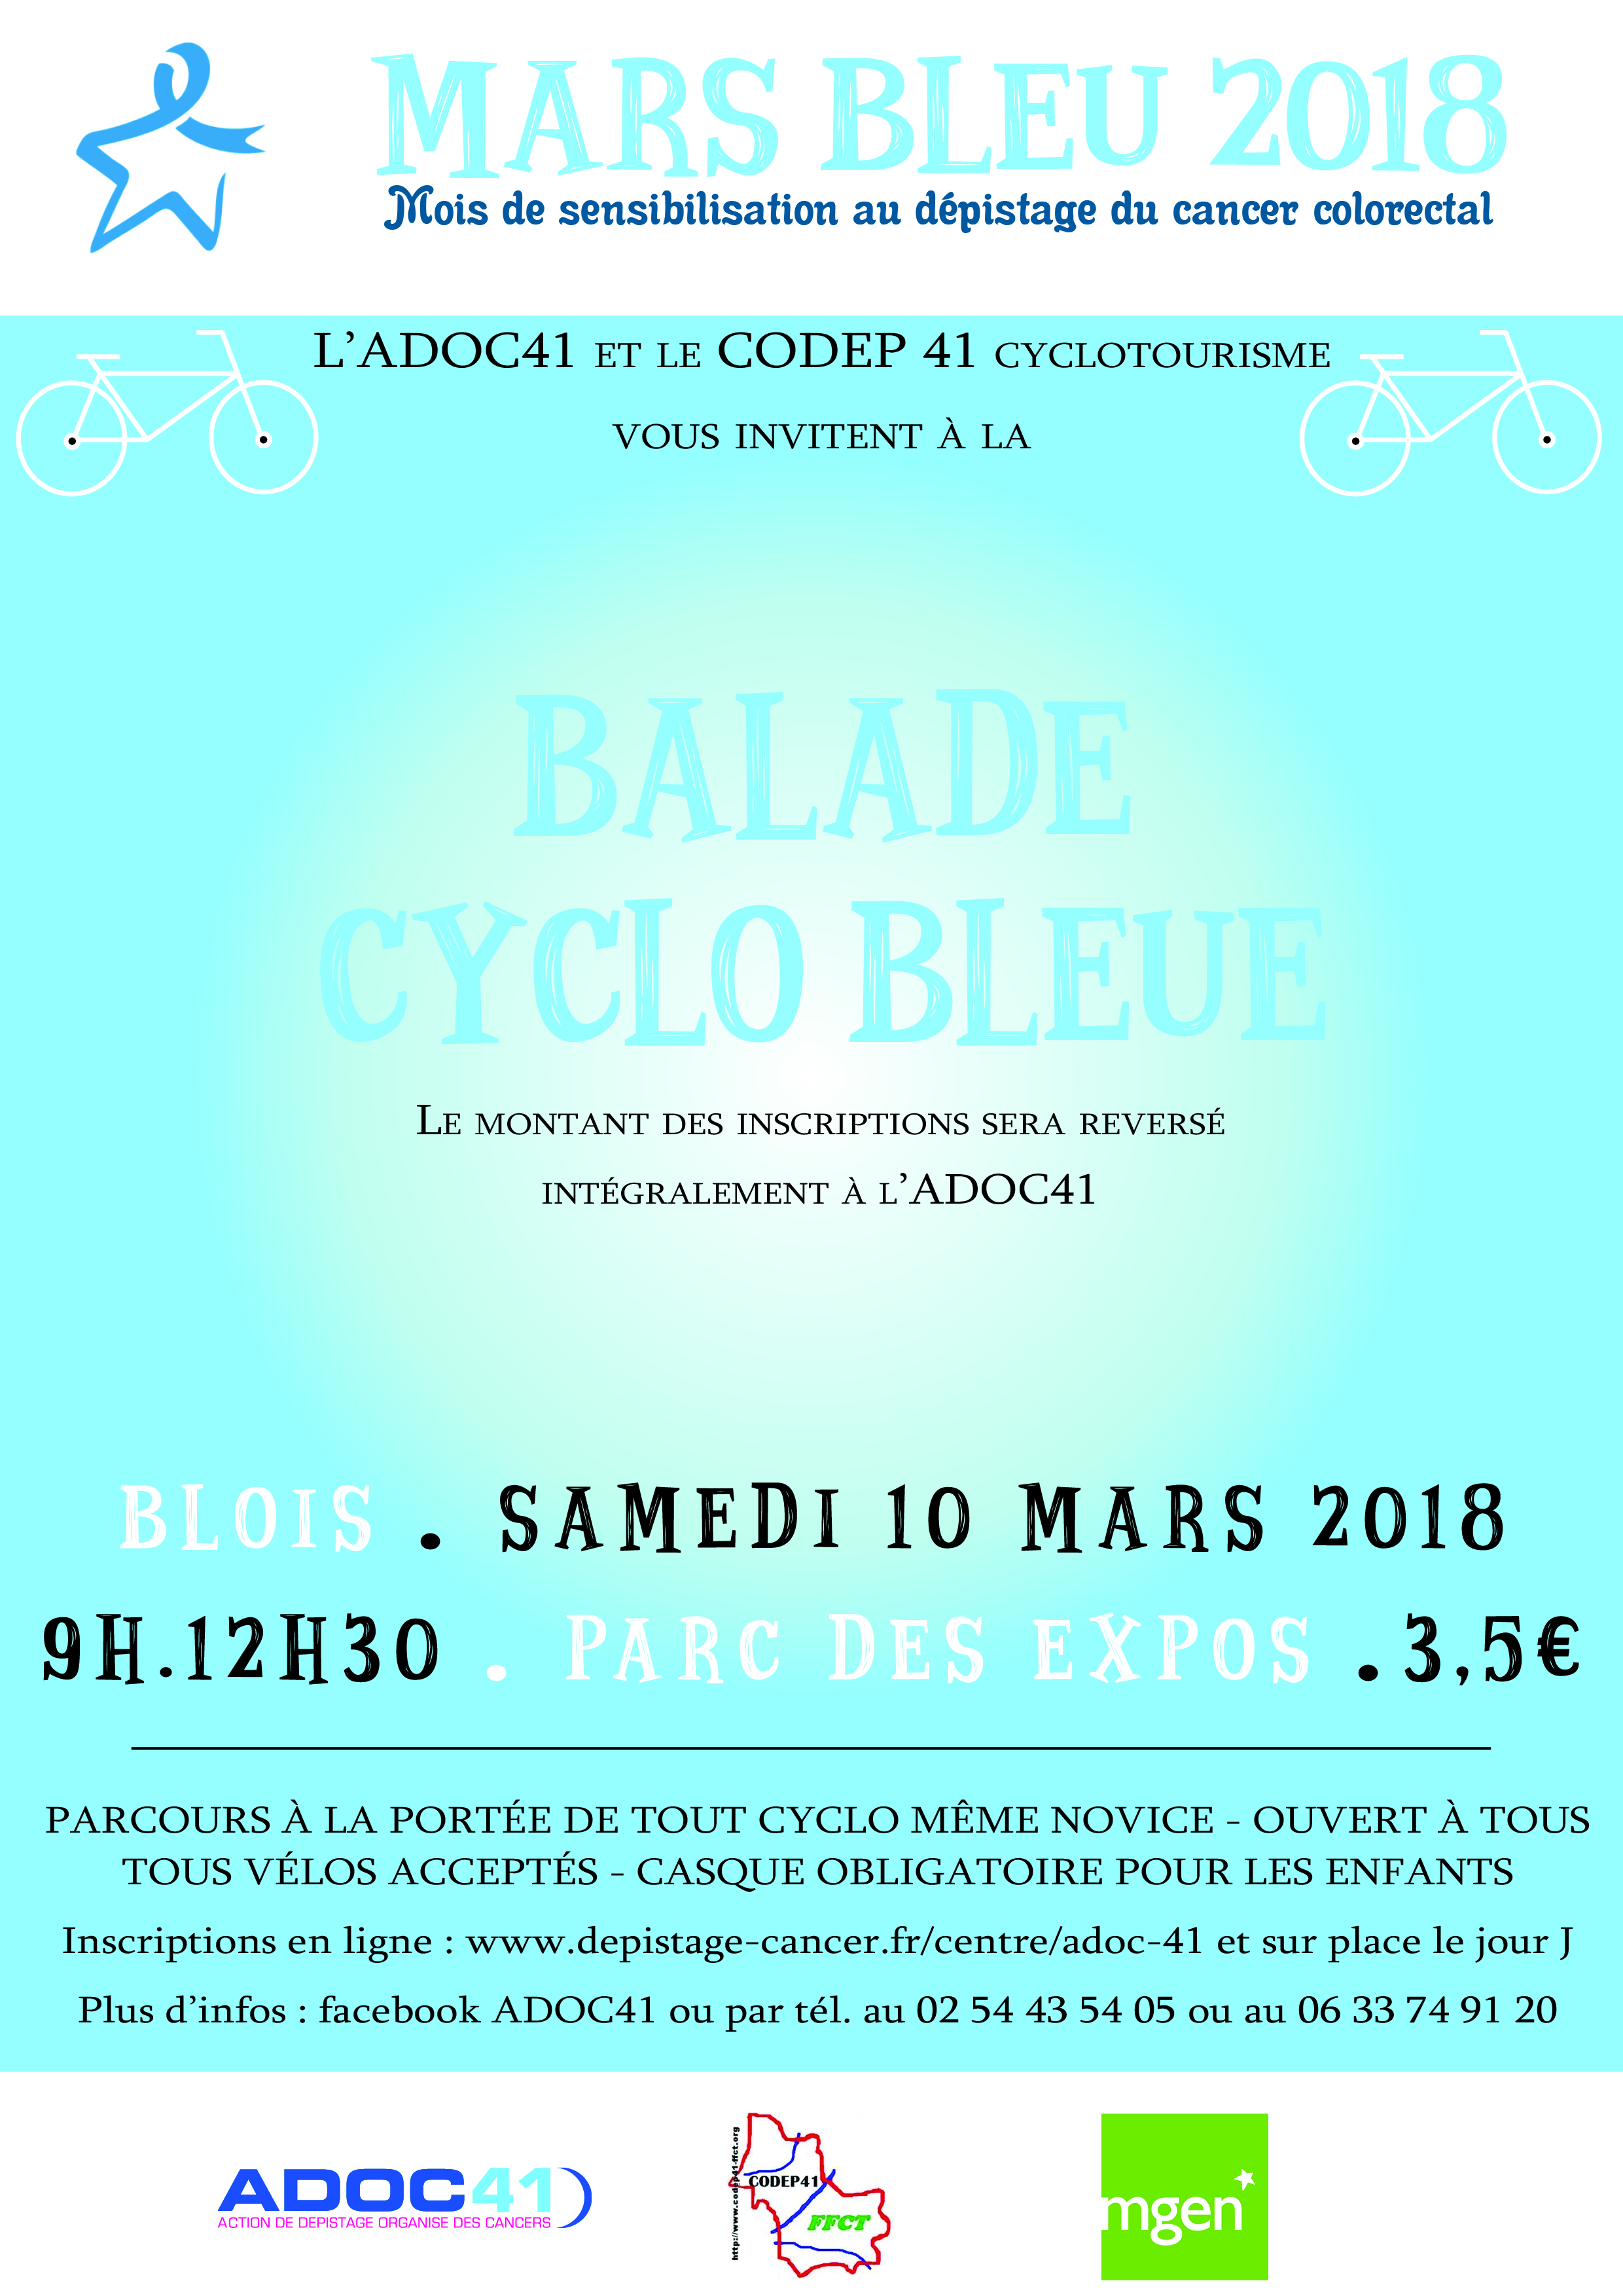 Affiche balade cyclo bleue 2018 mars bleu